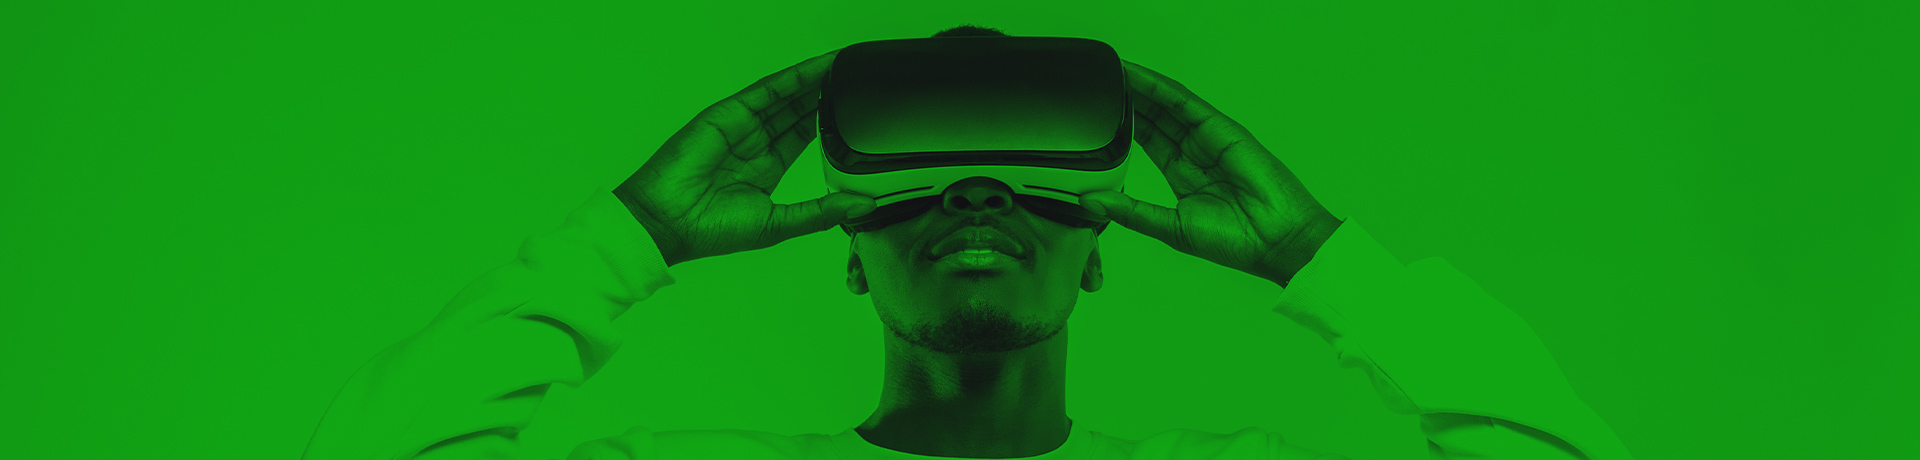 Un homme avec un casque de réalité virtuelle